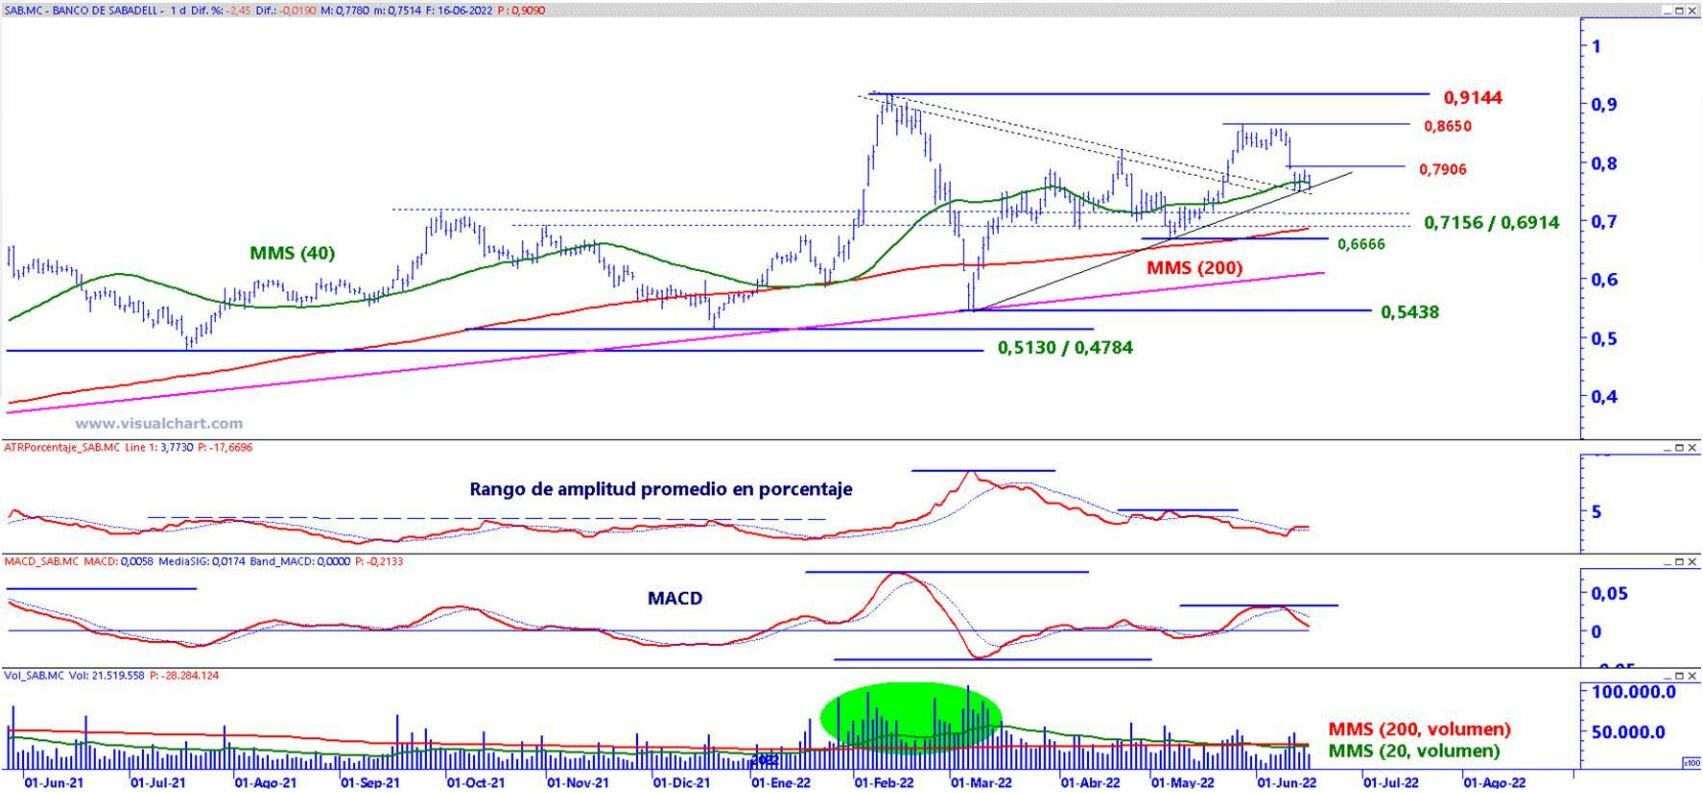 Banco Sabadell análisis técnico del valor 